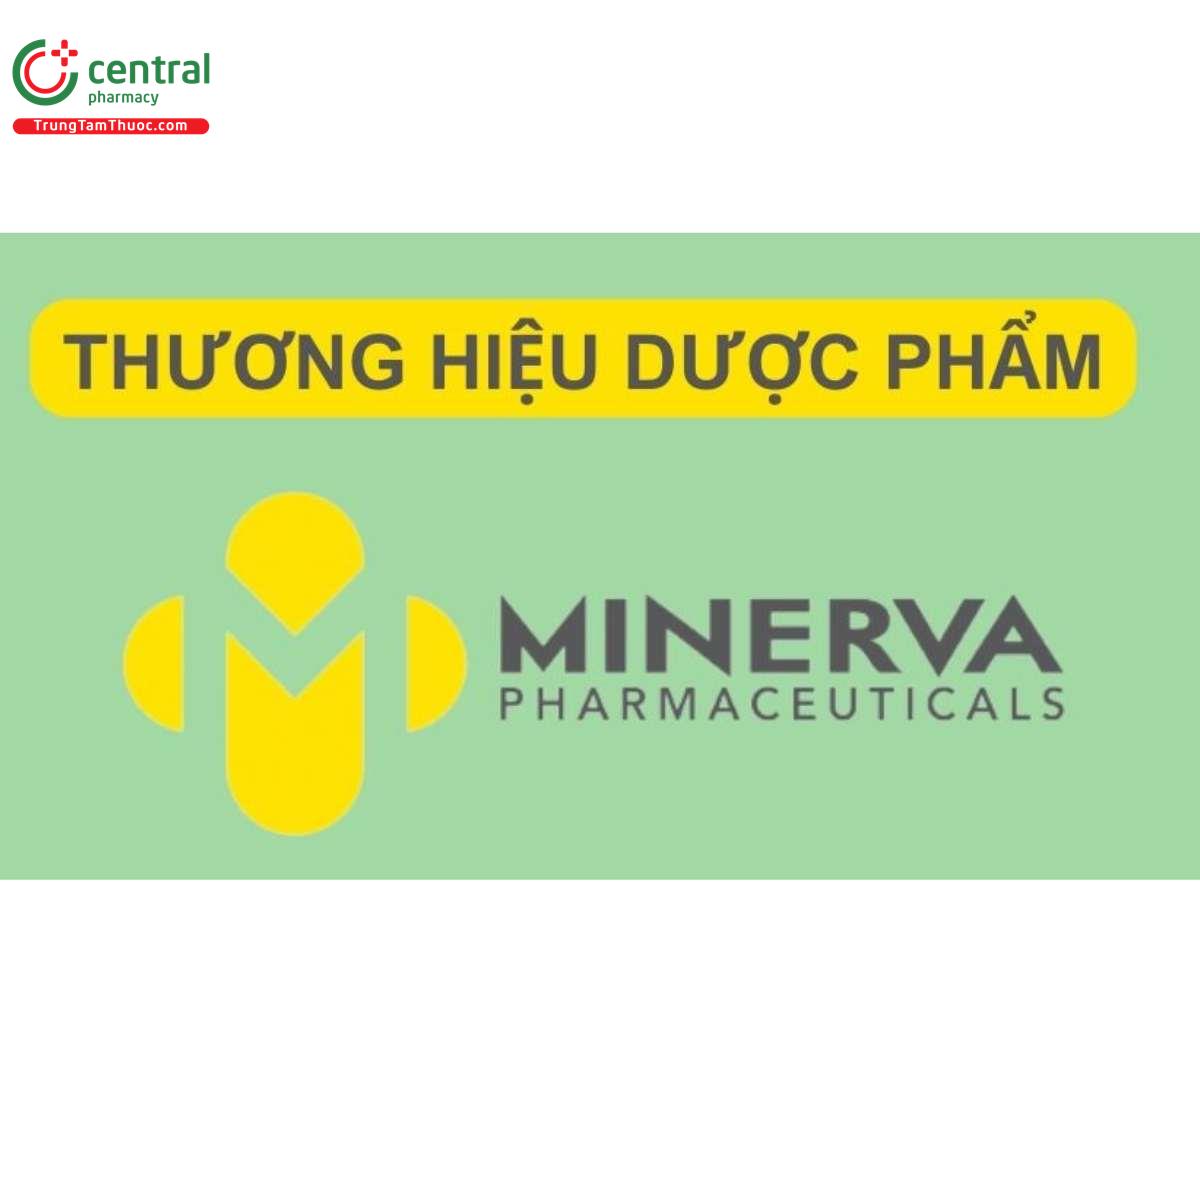 Minerva Pharmaceuticals